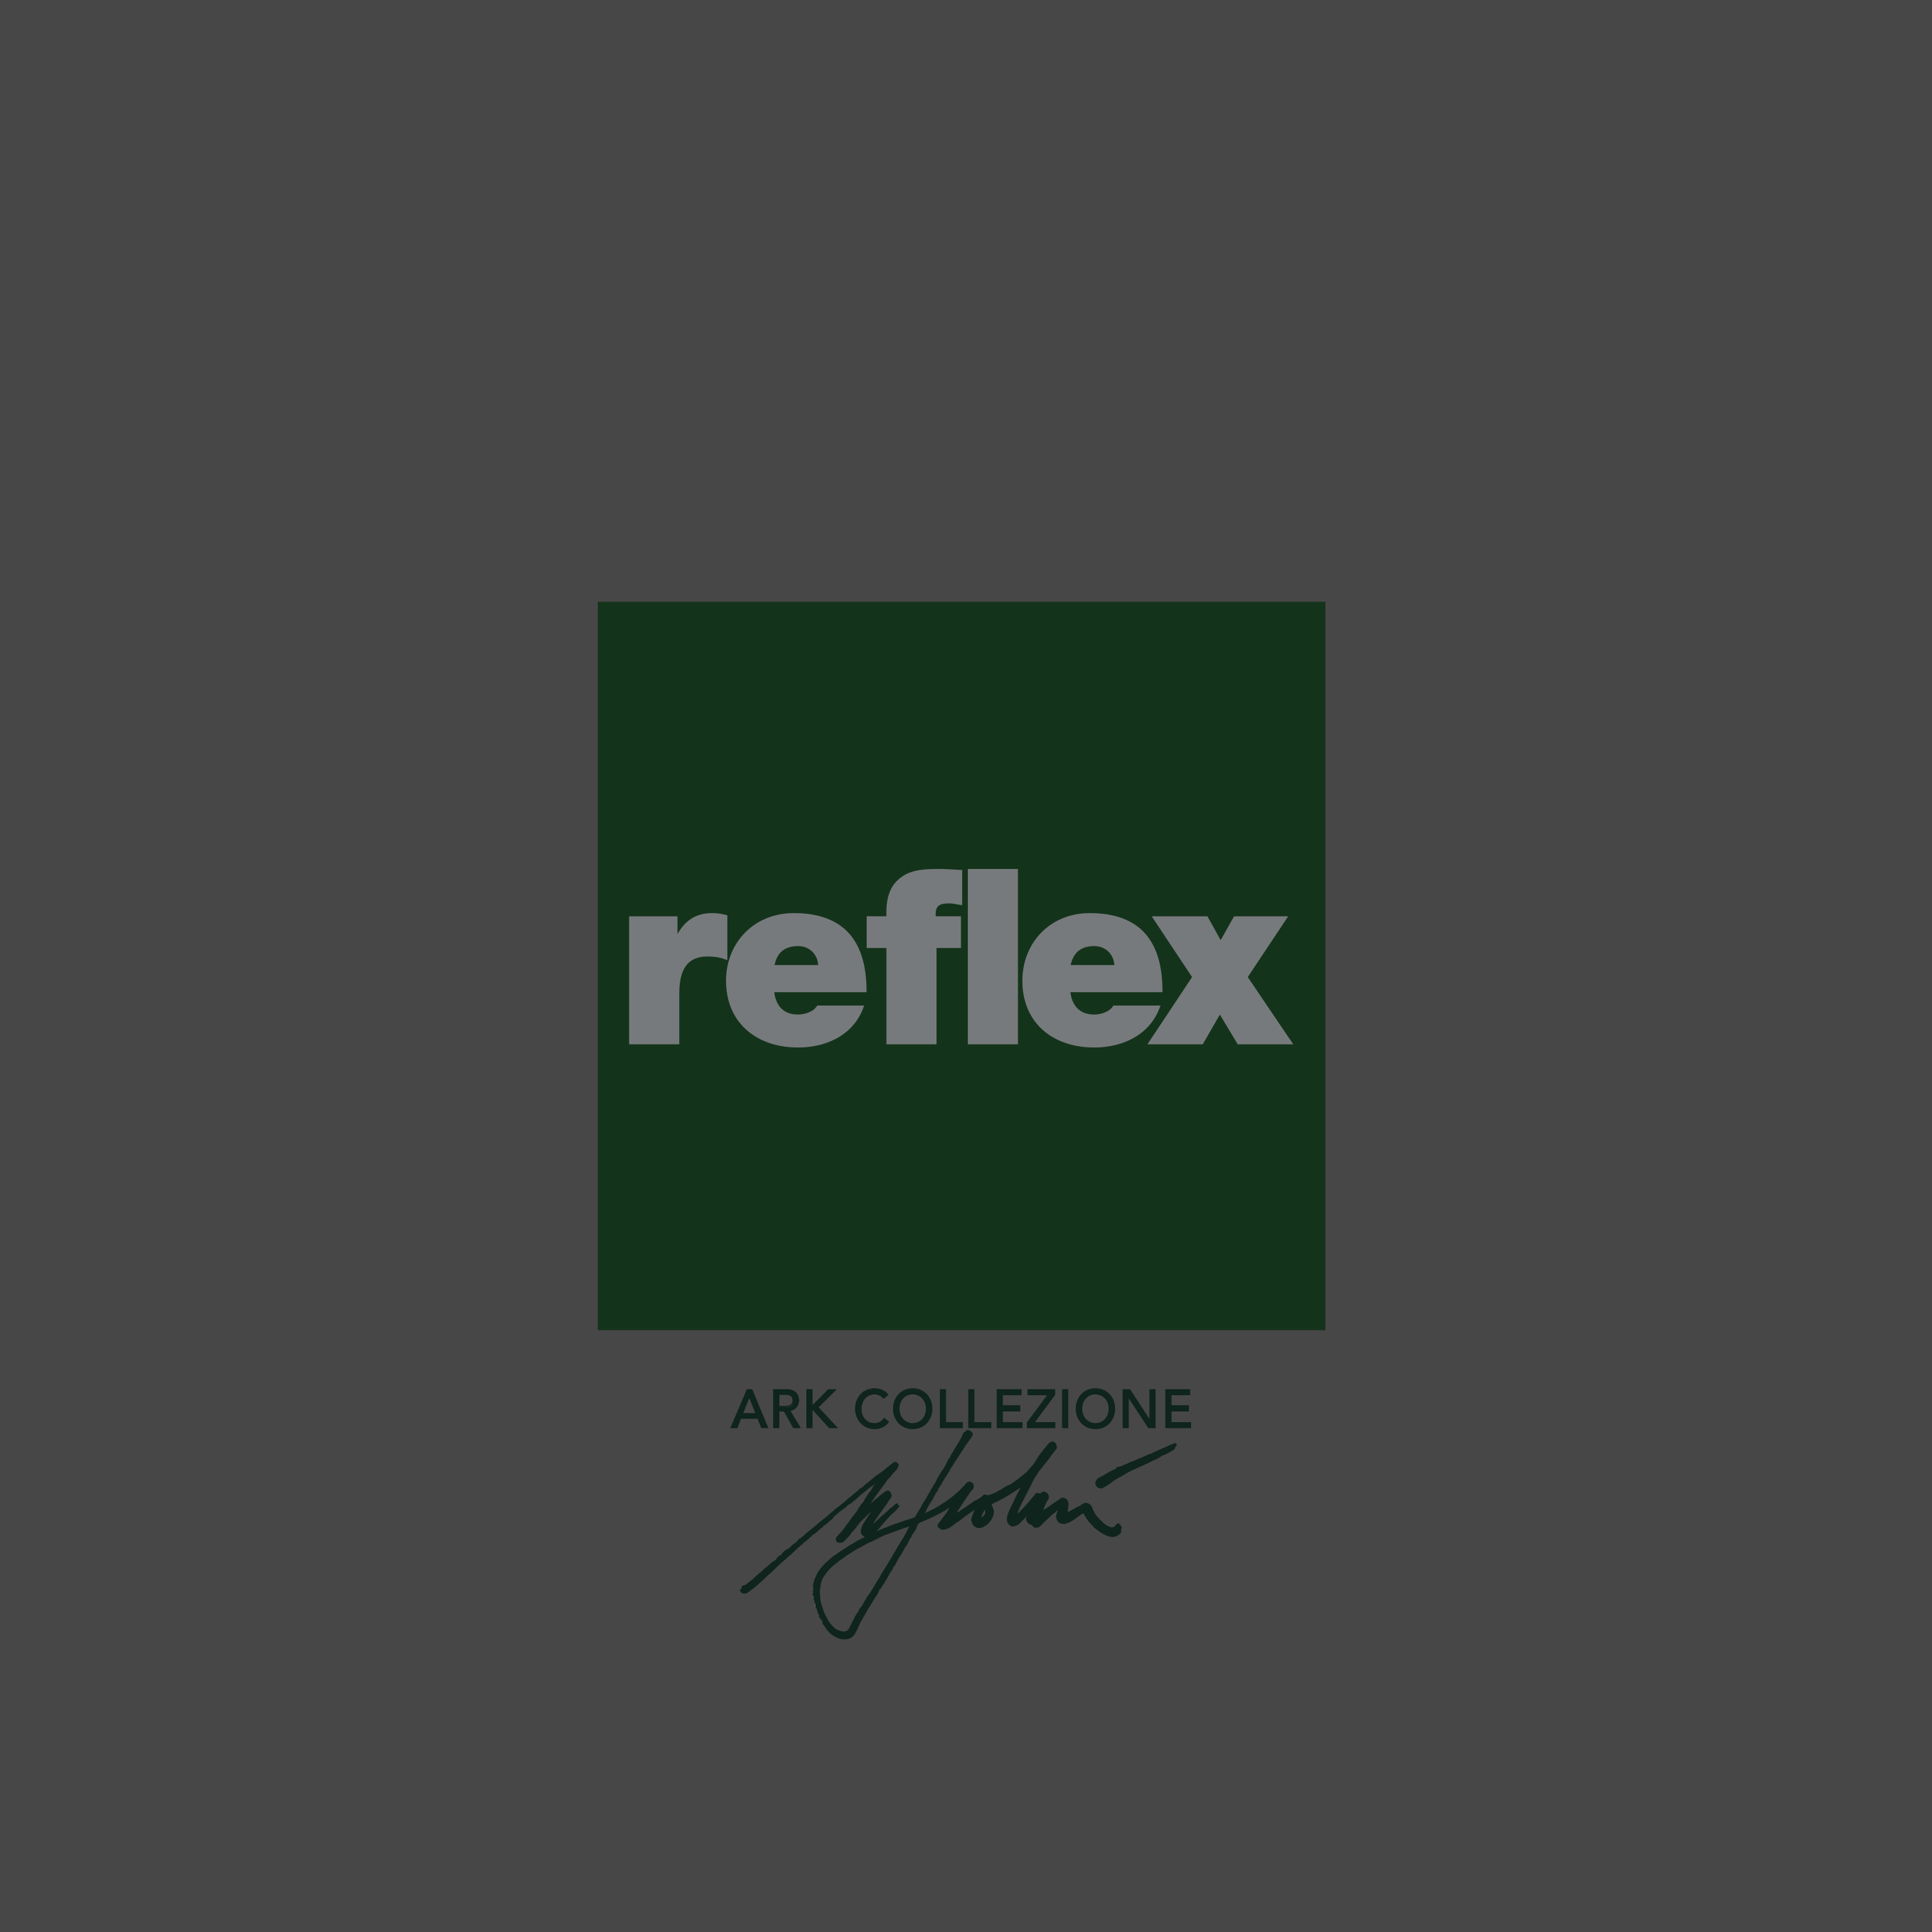 Reflex Ark Collezione Scolari